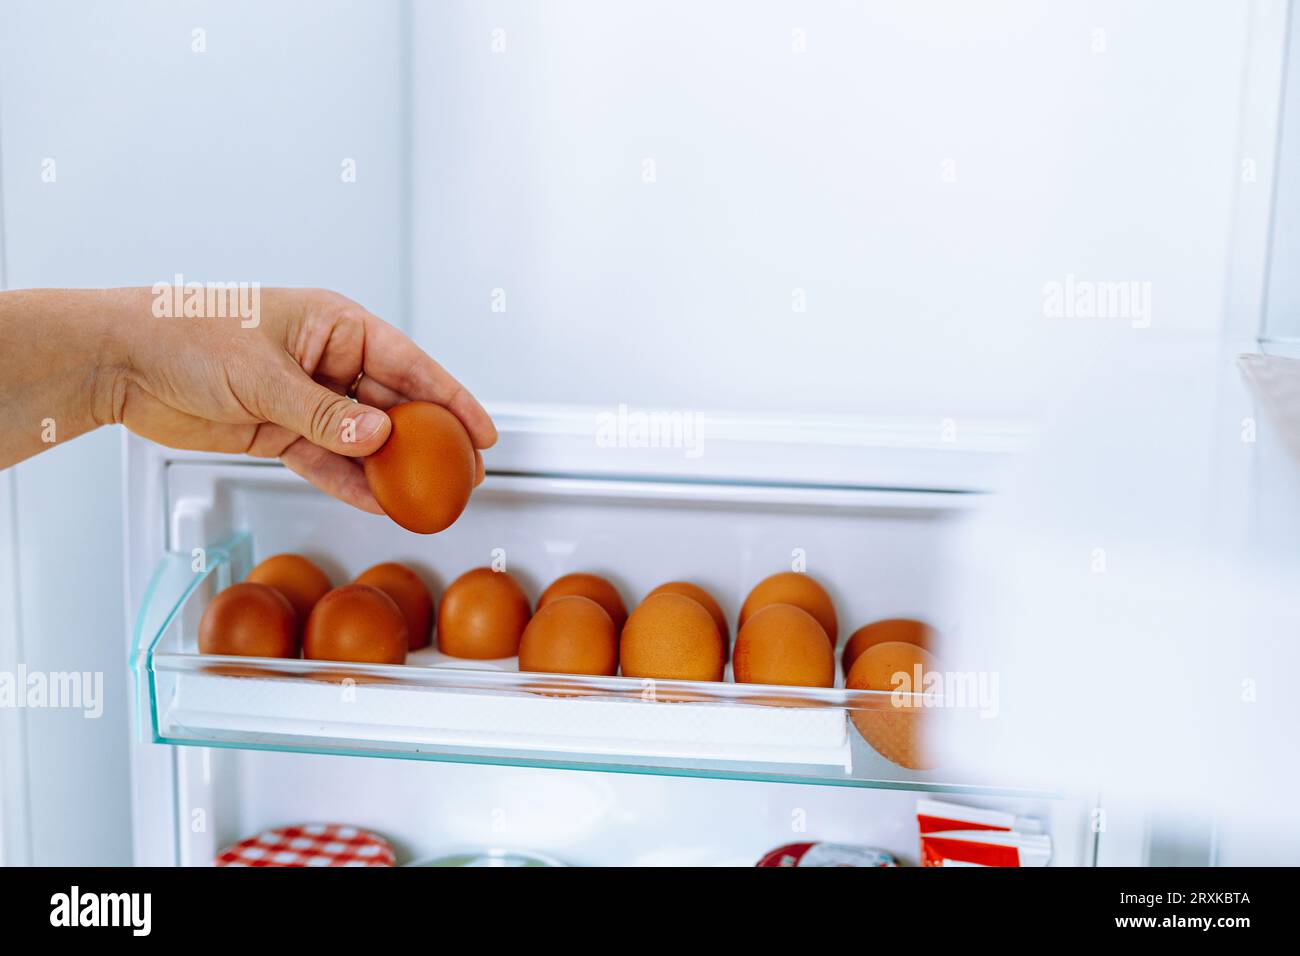 Chiudi le mani umane metti le uova di gallina nel vano per la deposizione delle uova in frigorifero Foto Stock